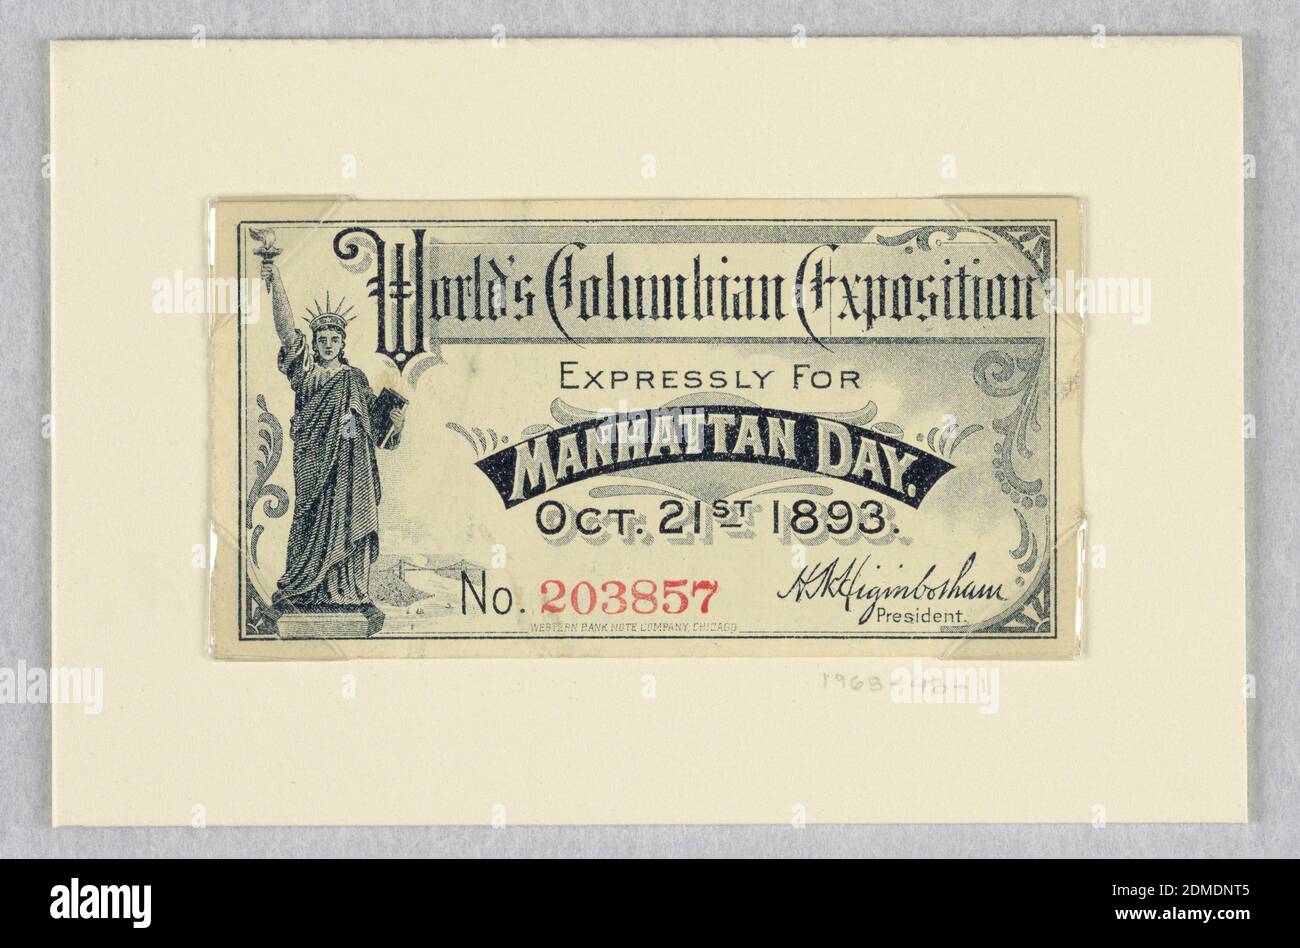 Biglietto per la World's Columbian Exposition, espressamente per il Manhattan Day, 21 ottobre 1893, litografia offset su carta wove, New York, USA, USA, 1893, Ephemera, Stampa Foto Stock